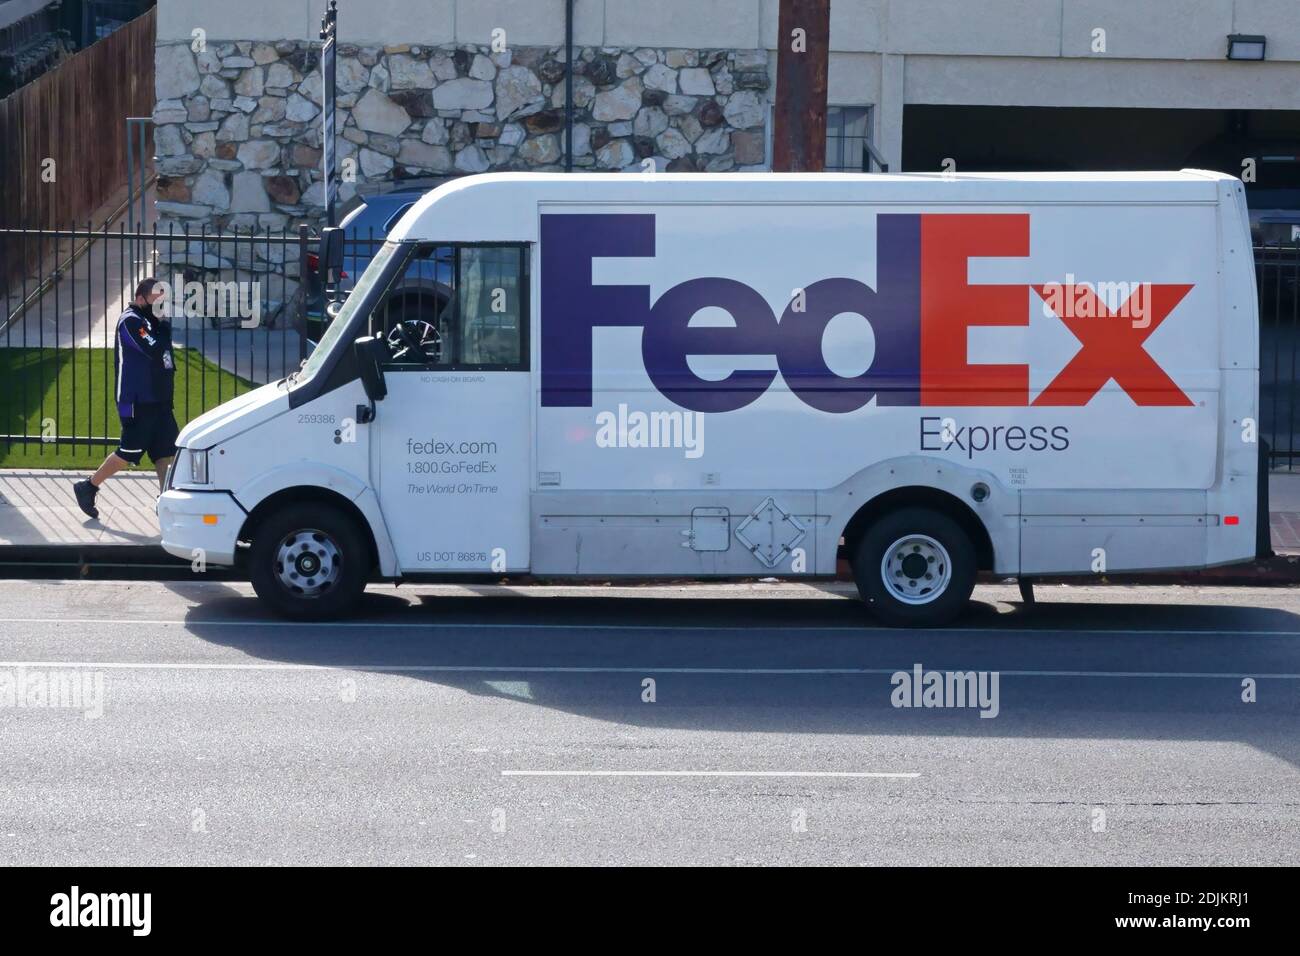 Los Angeles, CA / USA - 10. Dezember 2020: Ein FedEx Express Diesel-Lieferwagen, gebaut als Isuzu Reach, wird auf einer Stadtstraße geparkt gezeigt. Stockfoto